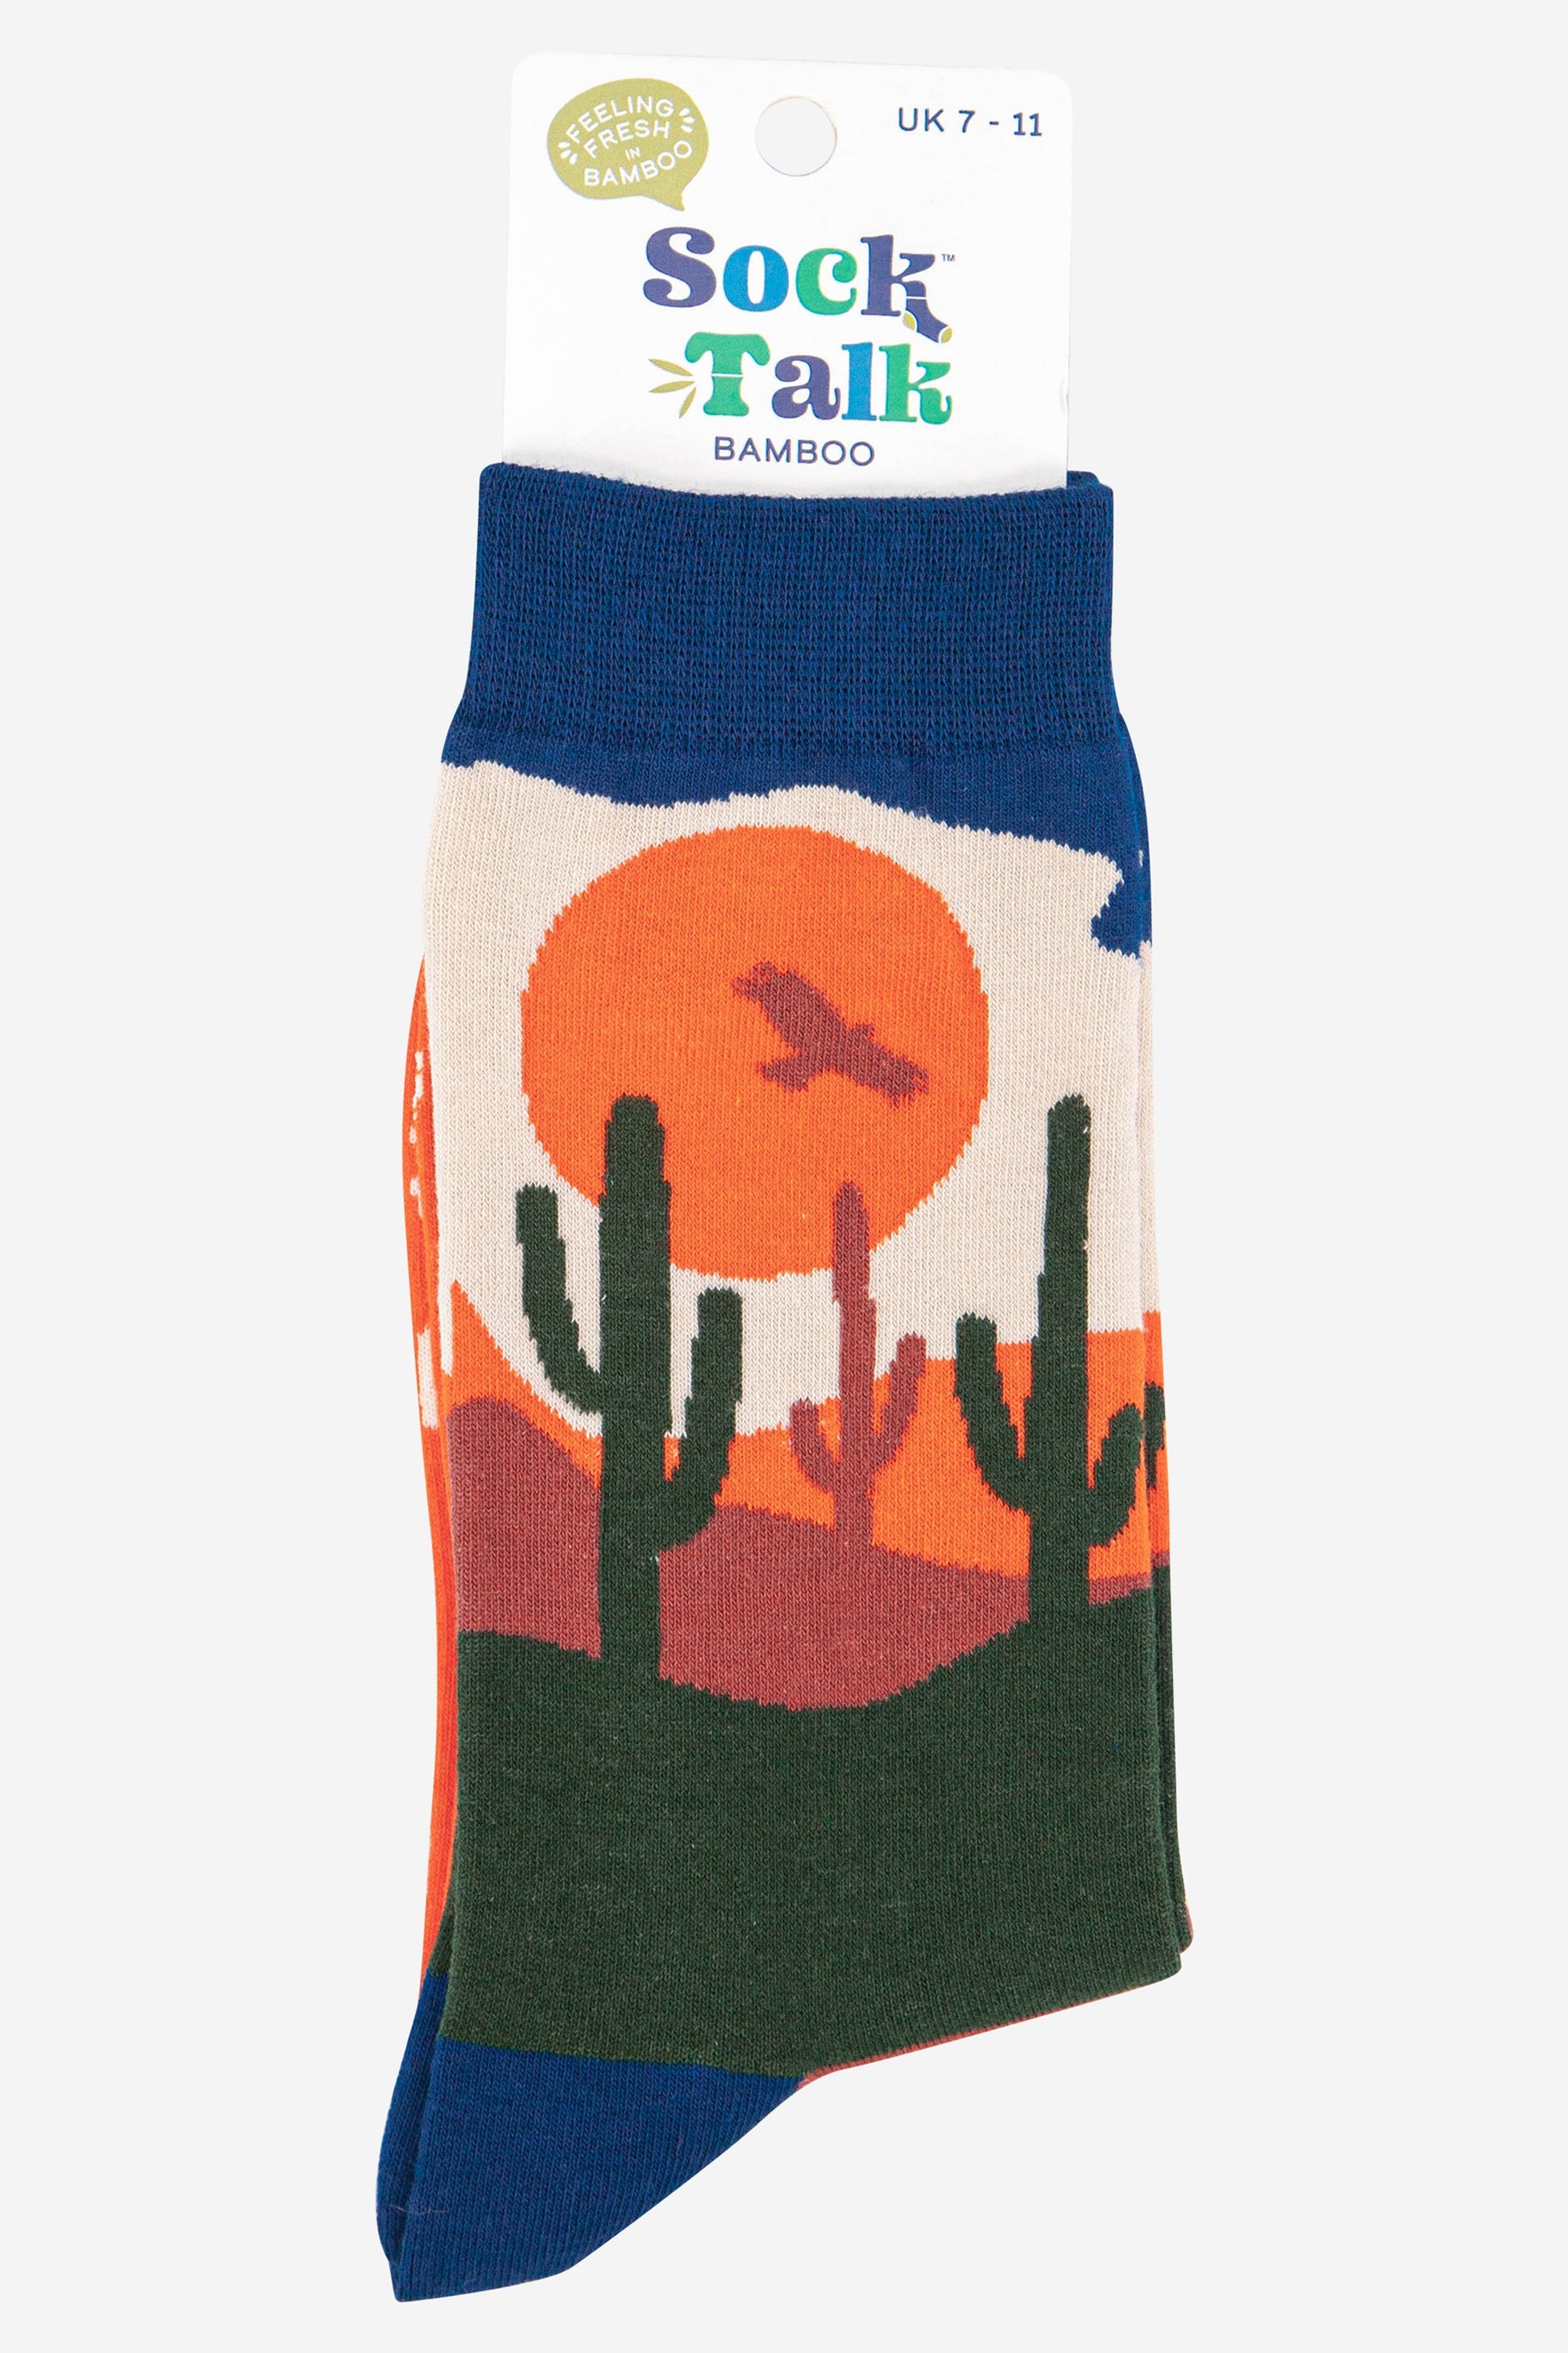 mens wild west desert scene bamboo socks uk size 7-11